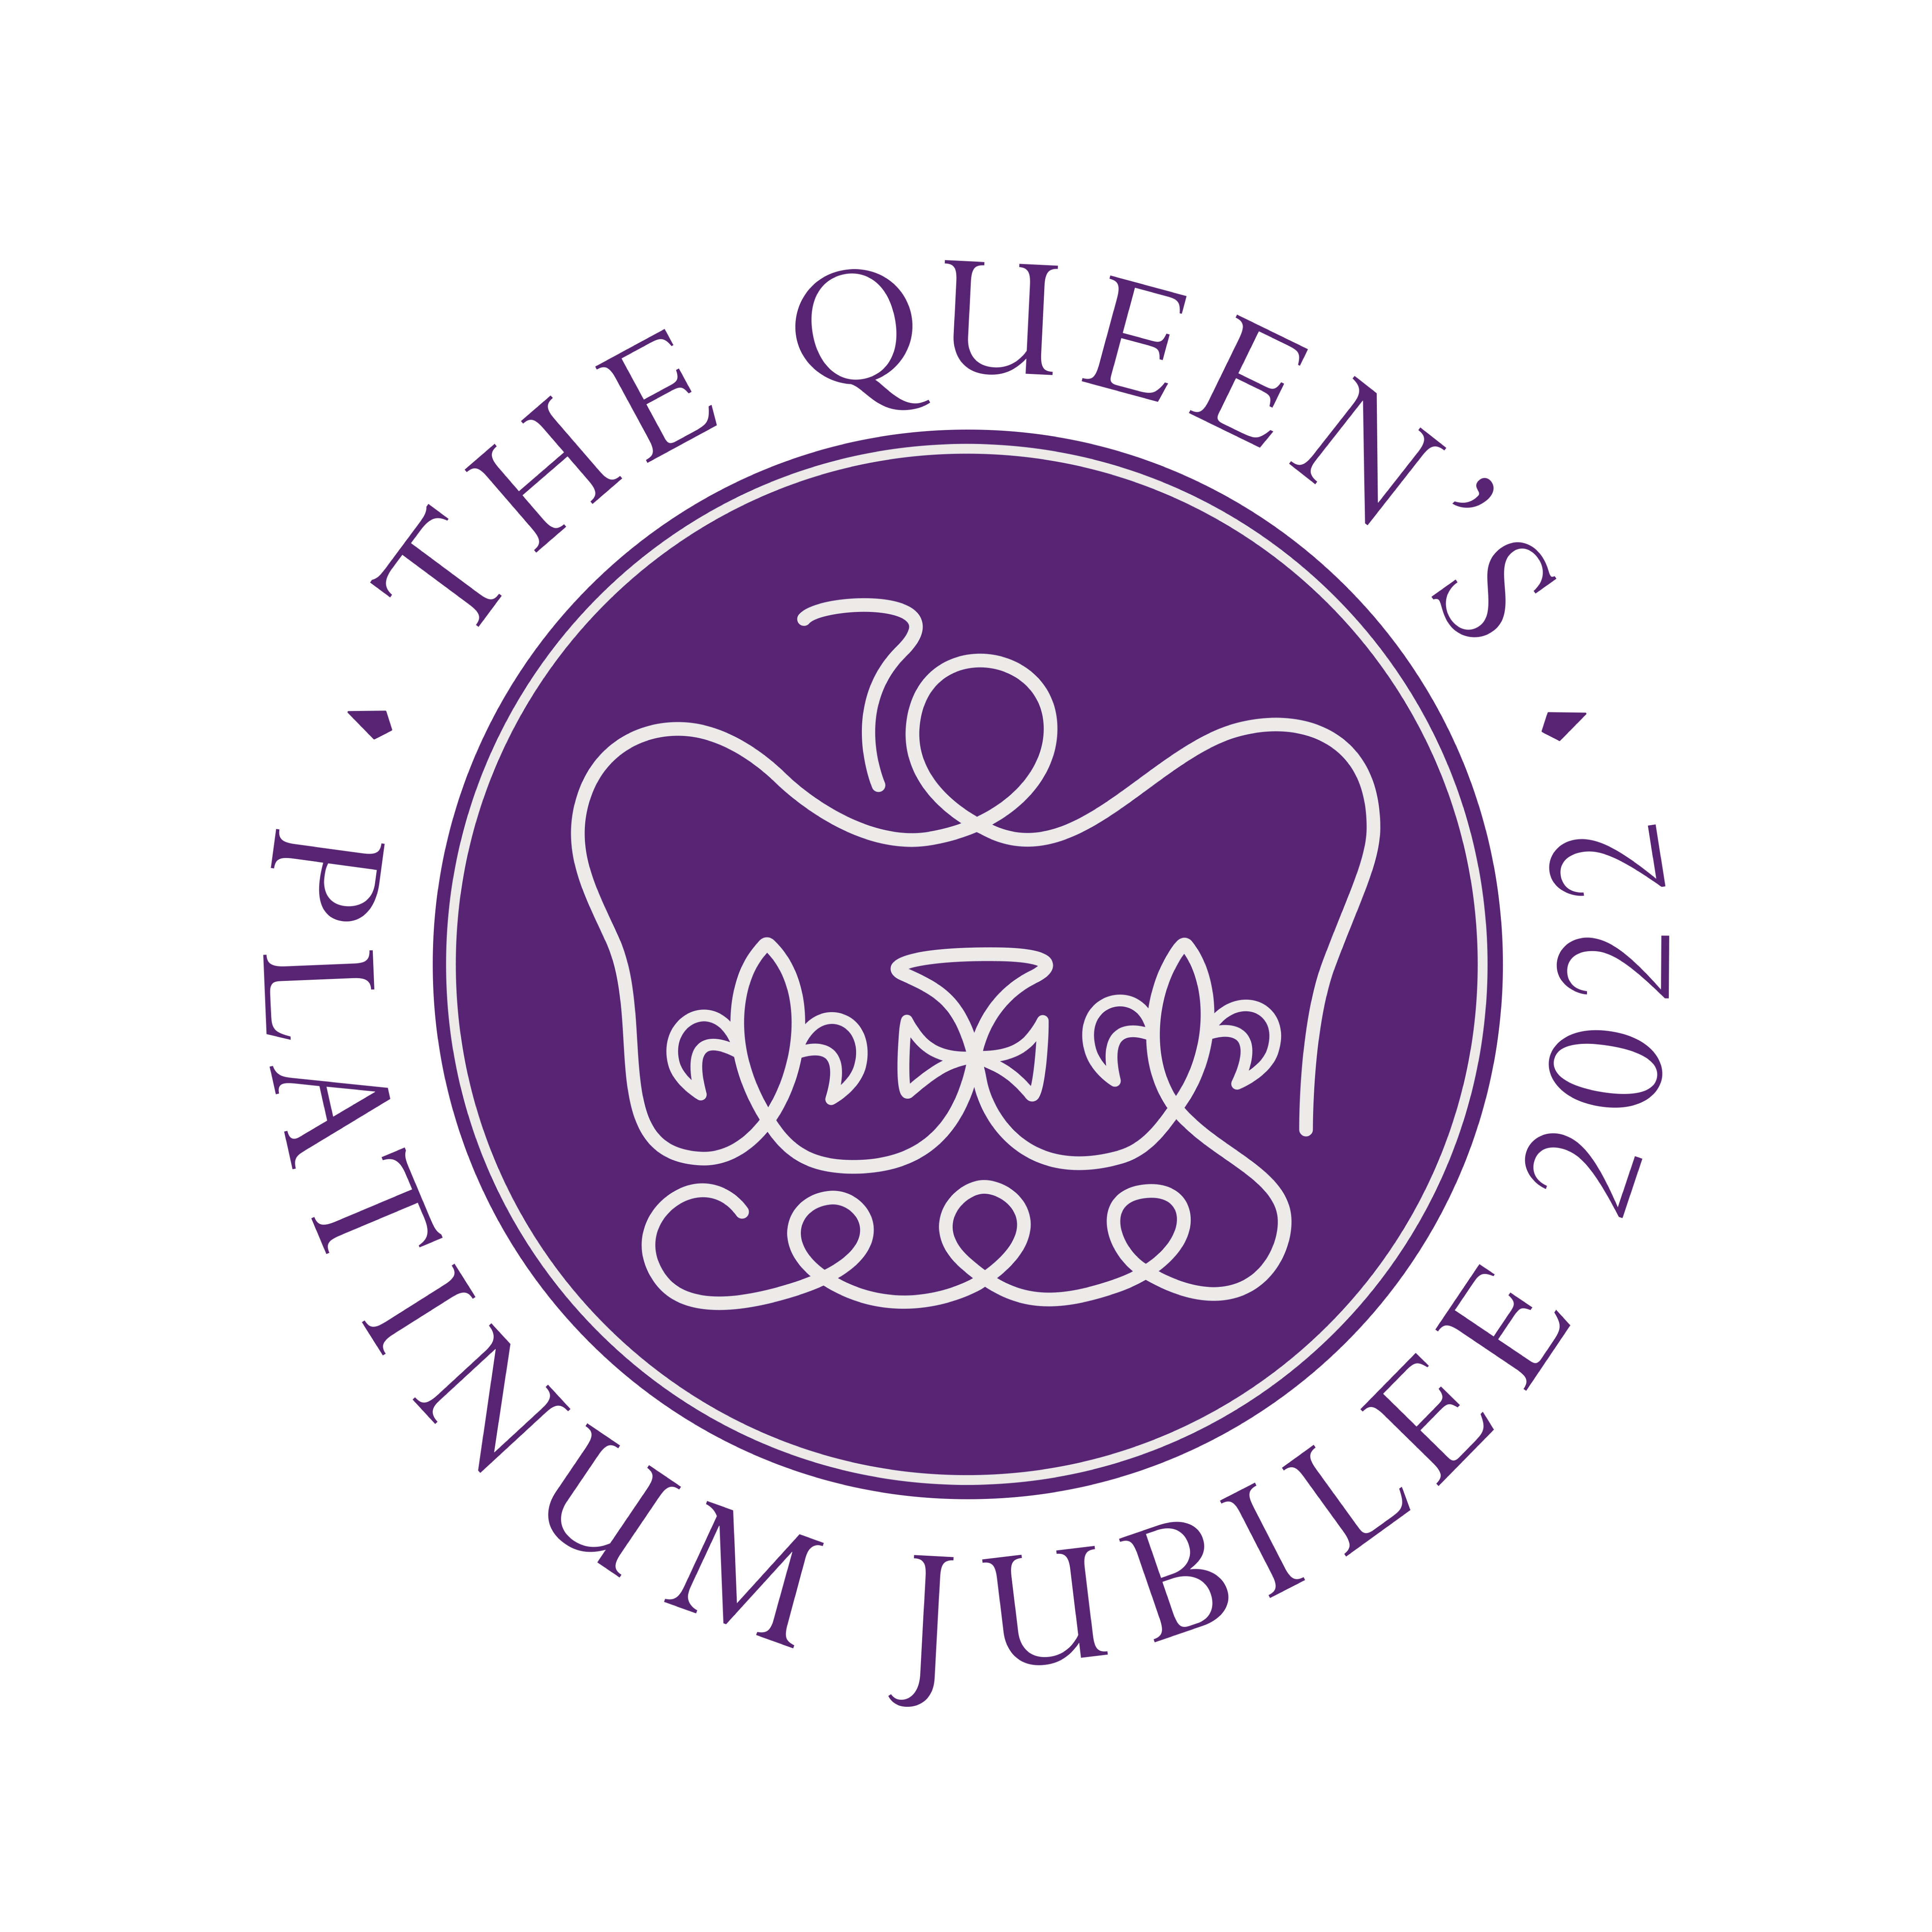 Queens jubilee logo